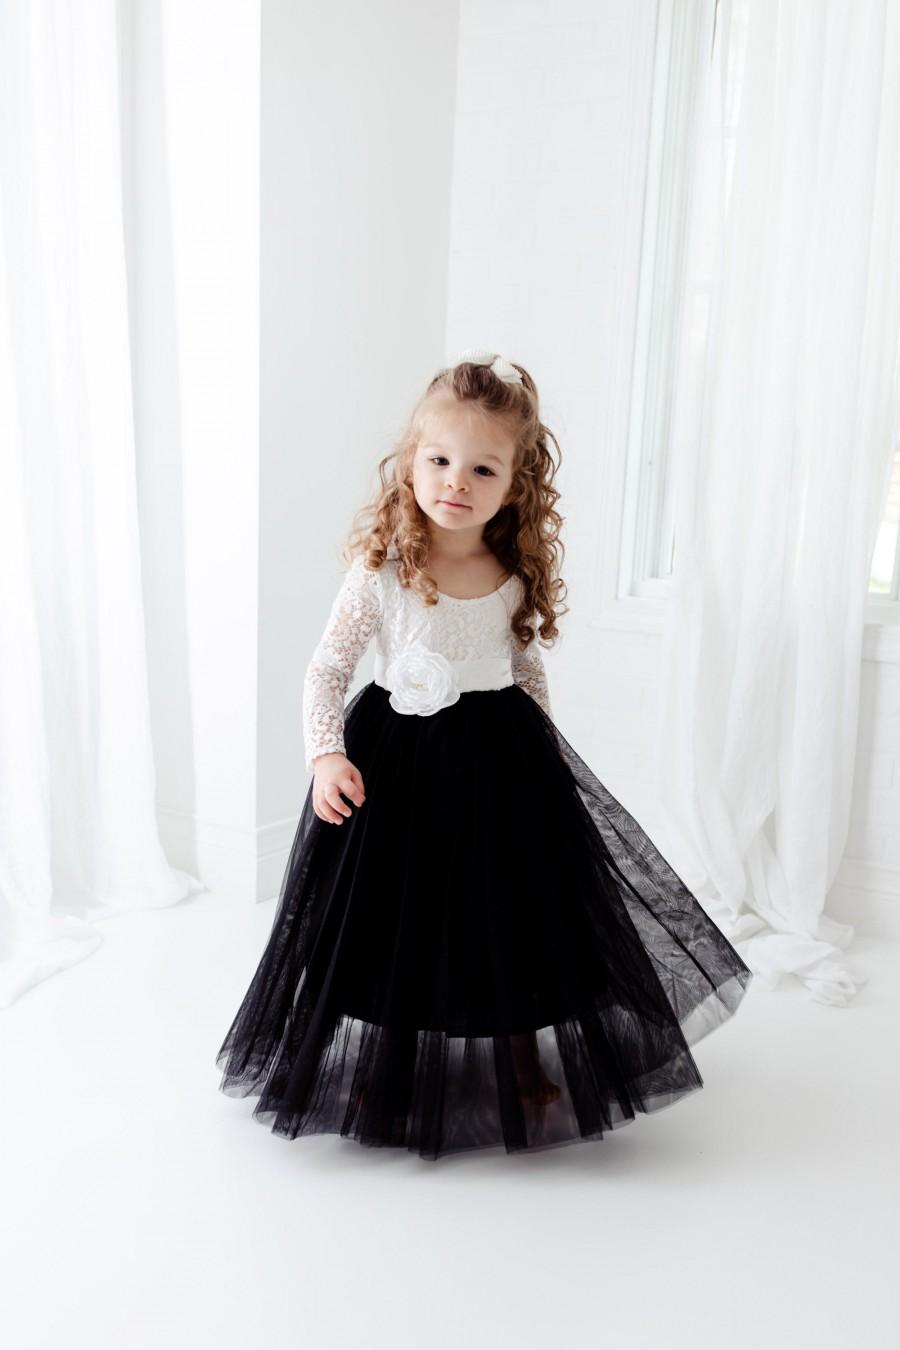 Wedding - Black and White Flower Girl Dress, Black Tulle Long Sleeve Dress, White Boho Dresses